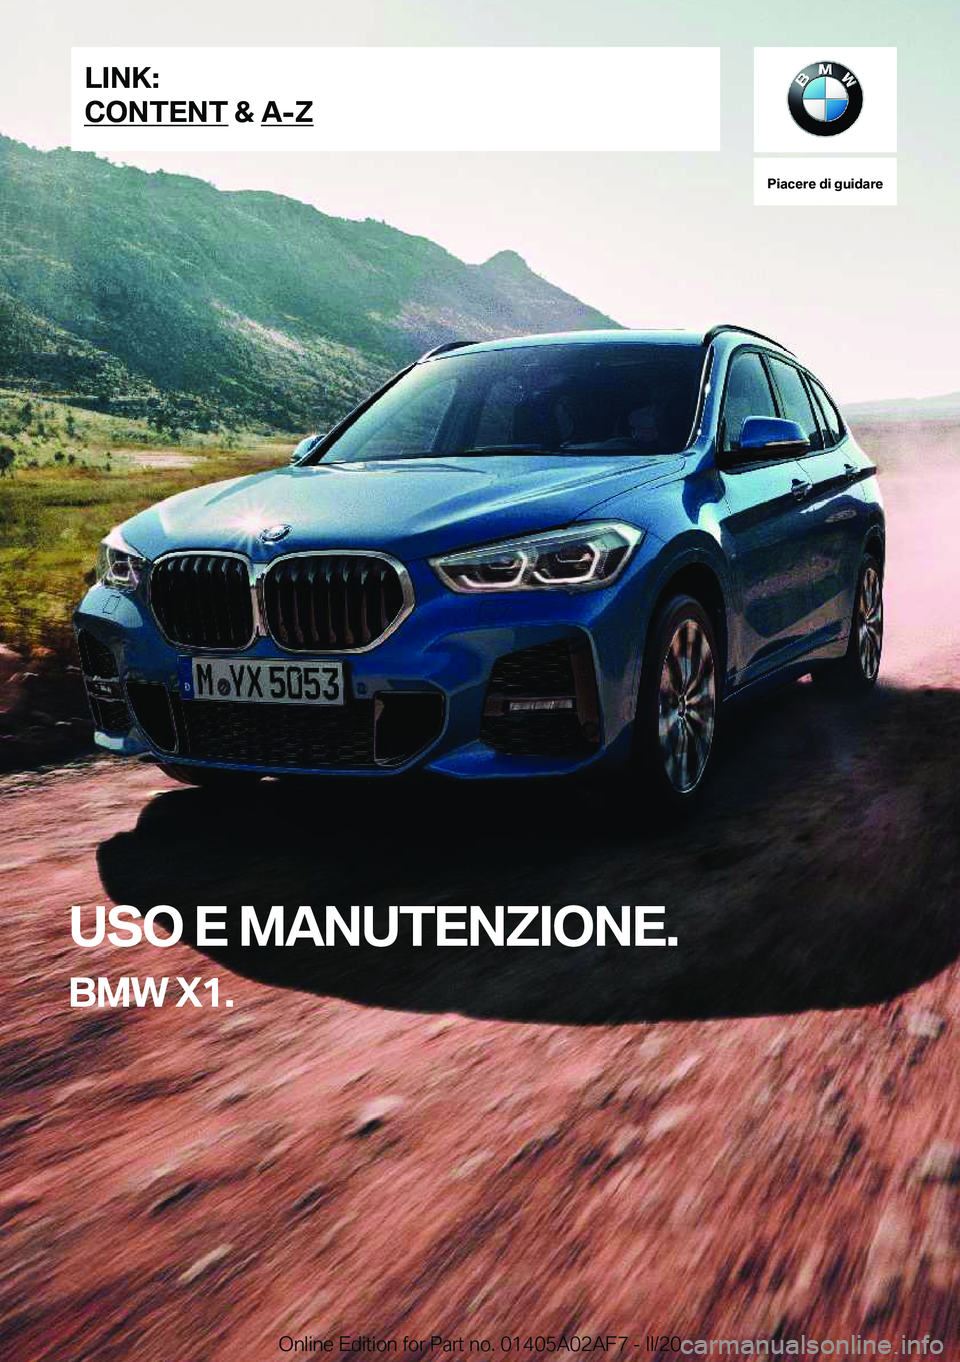 BMW X1 2020  Libretti Di Uso E manutenzione (in Italian) �P�i�a�c�e�r�e��d�i��g�u�i�d�a�r�e
�U�S�O��E��M�A�N�U�T�E�N�Z�I�O�N�E�.
�B�M�W��X�1�.�L�I�N�K�:
�C�O�N�T�E�N�T��&��A�-�Z�O�n�l�i�n�e��E�d�i�t�i�o�n��f�o�r��P�a�r�t��n�o�.��0�1�4�0�5�A�0�2�